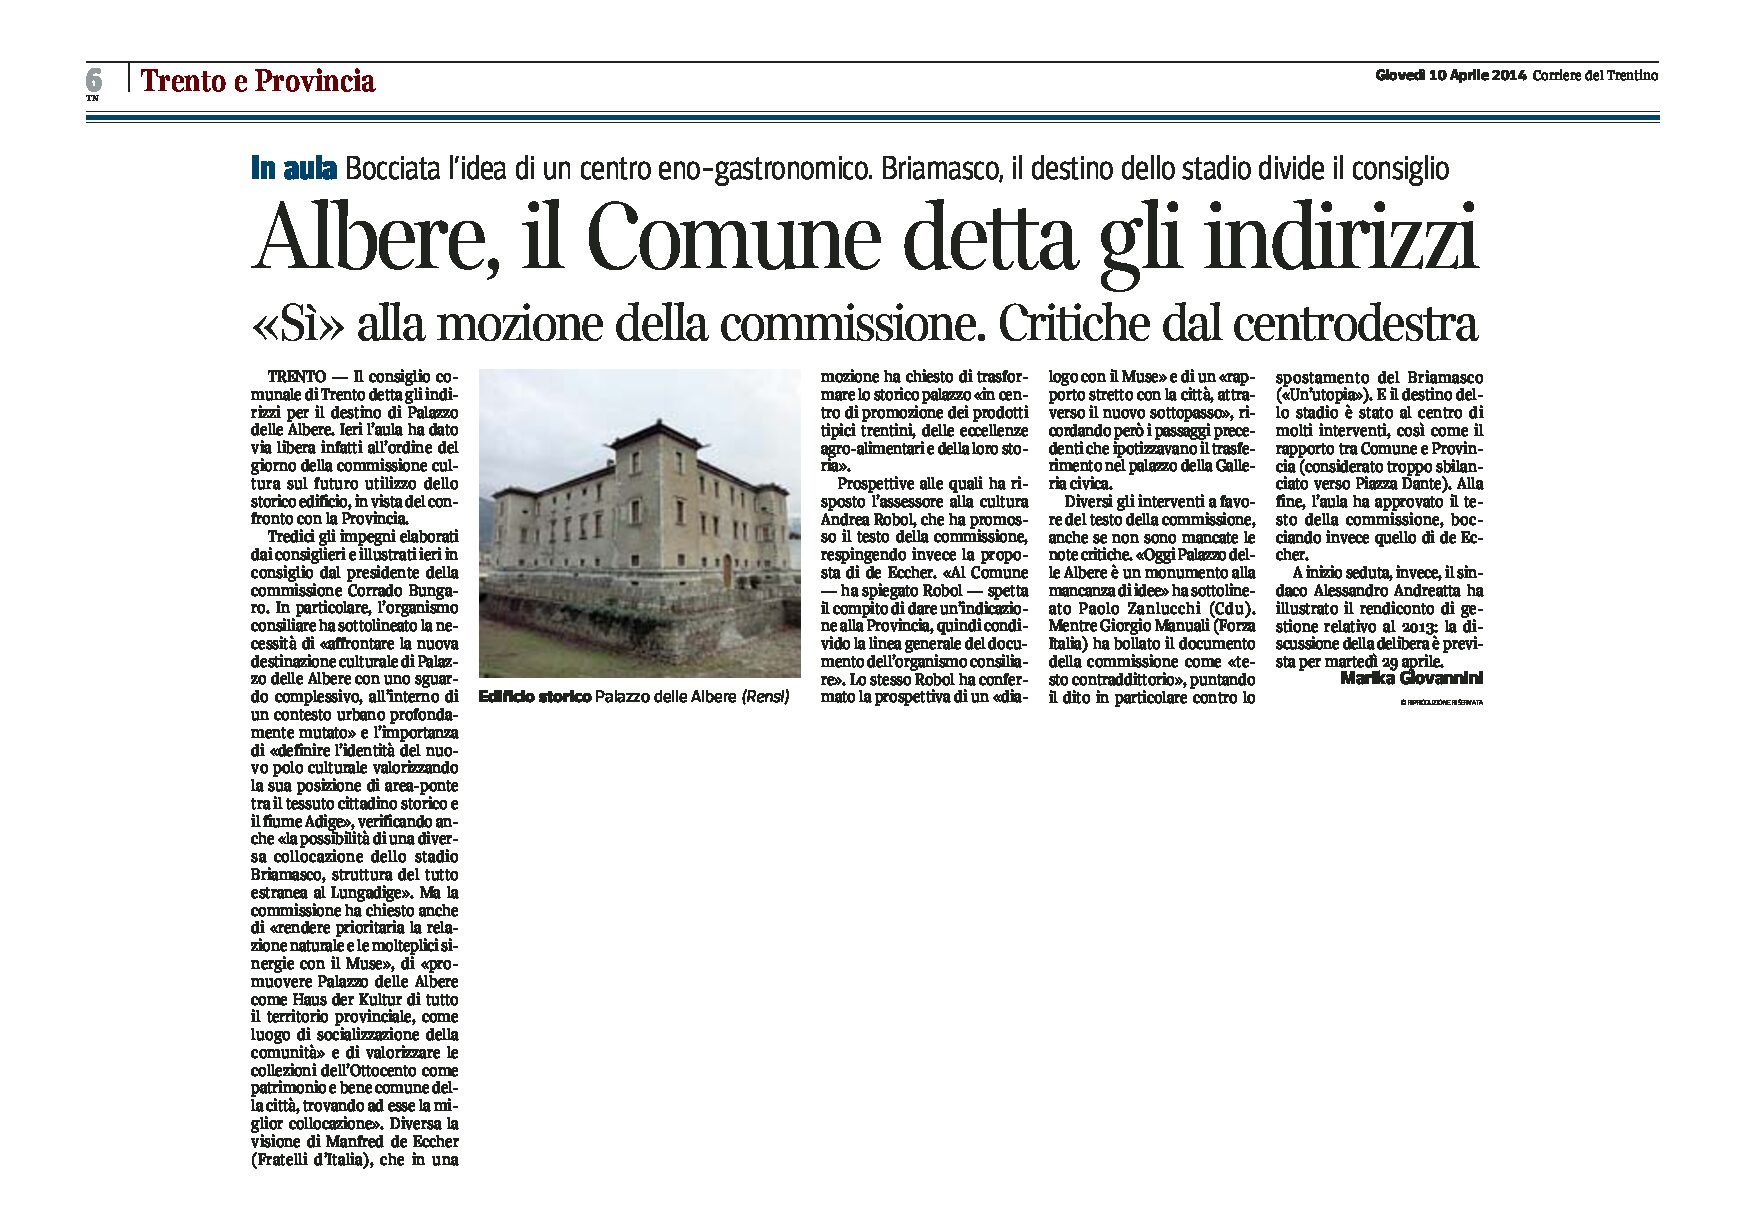 Trento: Albere, il Comune dette gli indirizzi